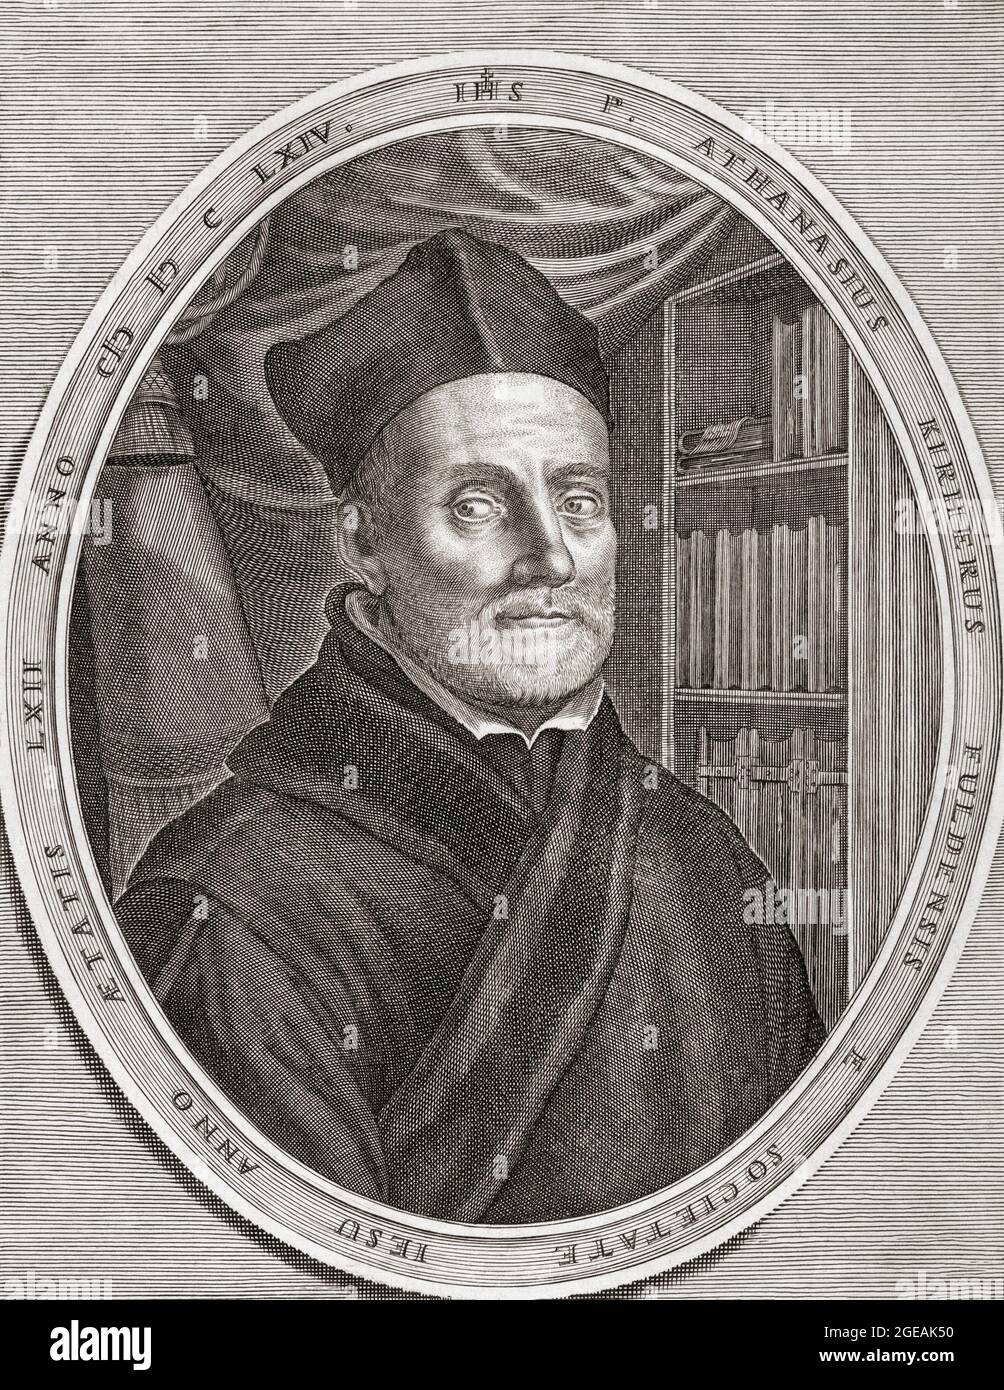 Athanasius Kircher, 1602 – 1680. Deutscher Jesuitenwissenschaftler und Universalgelehrter. Seine Interessen und Leistungen waren so breit gefächert, dass er mit Leonardo da Vinci verglichen wurde. Nach einem Werk von Cornelis Bloemaert aus dem 17. Jahrhundert. Stockfoto